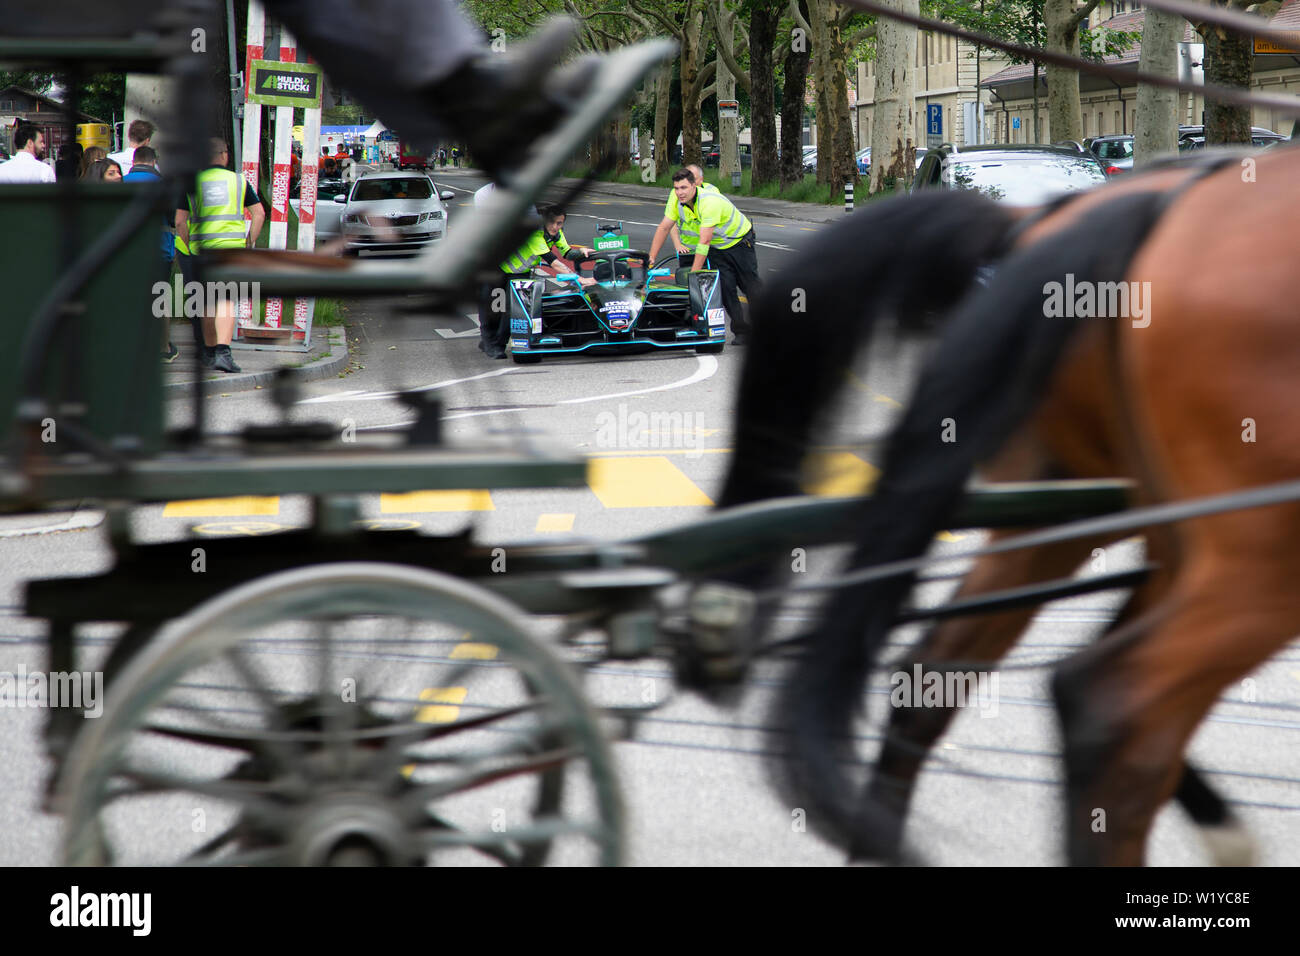 La vitesse d'un cheval caddy passé tout en membres d'équipage pousse l'un de l'HWA Formule E voitures de la pitlane retour au garage de l'avant de la course de Formule E ABB à Berne. Banque D'Images